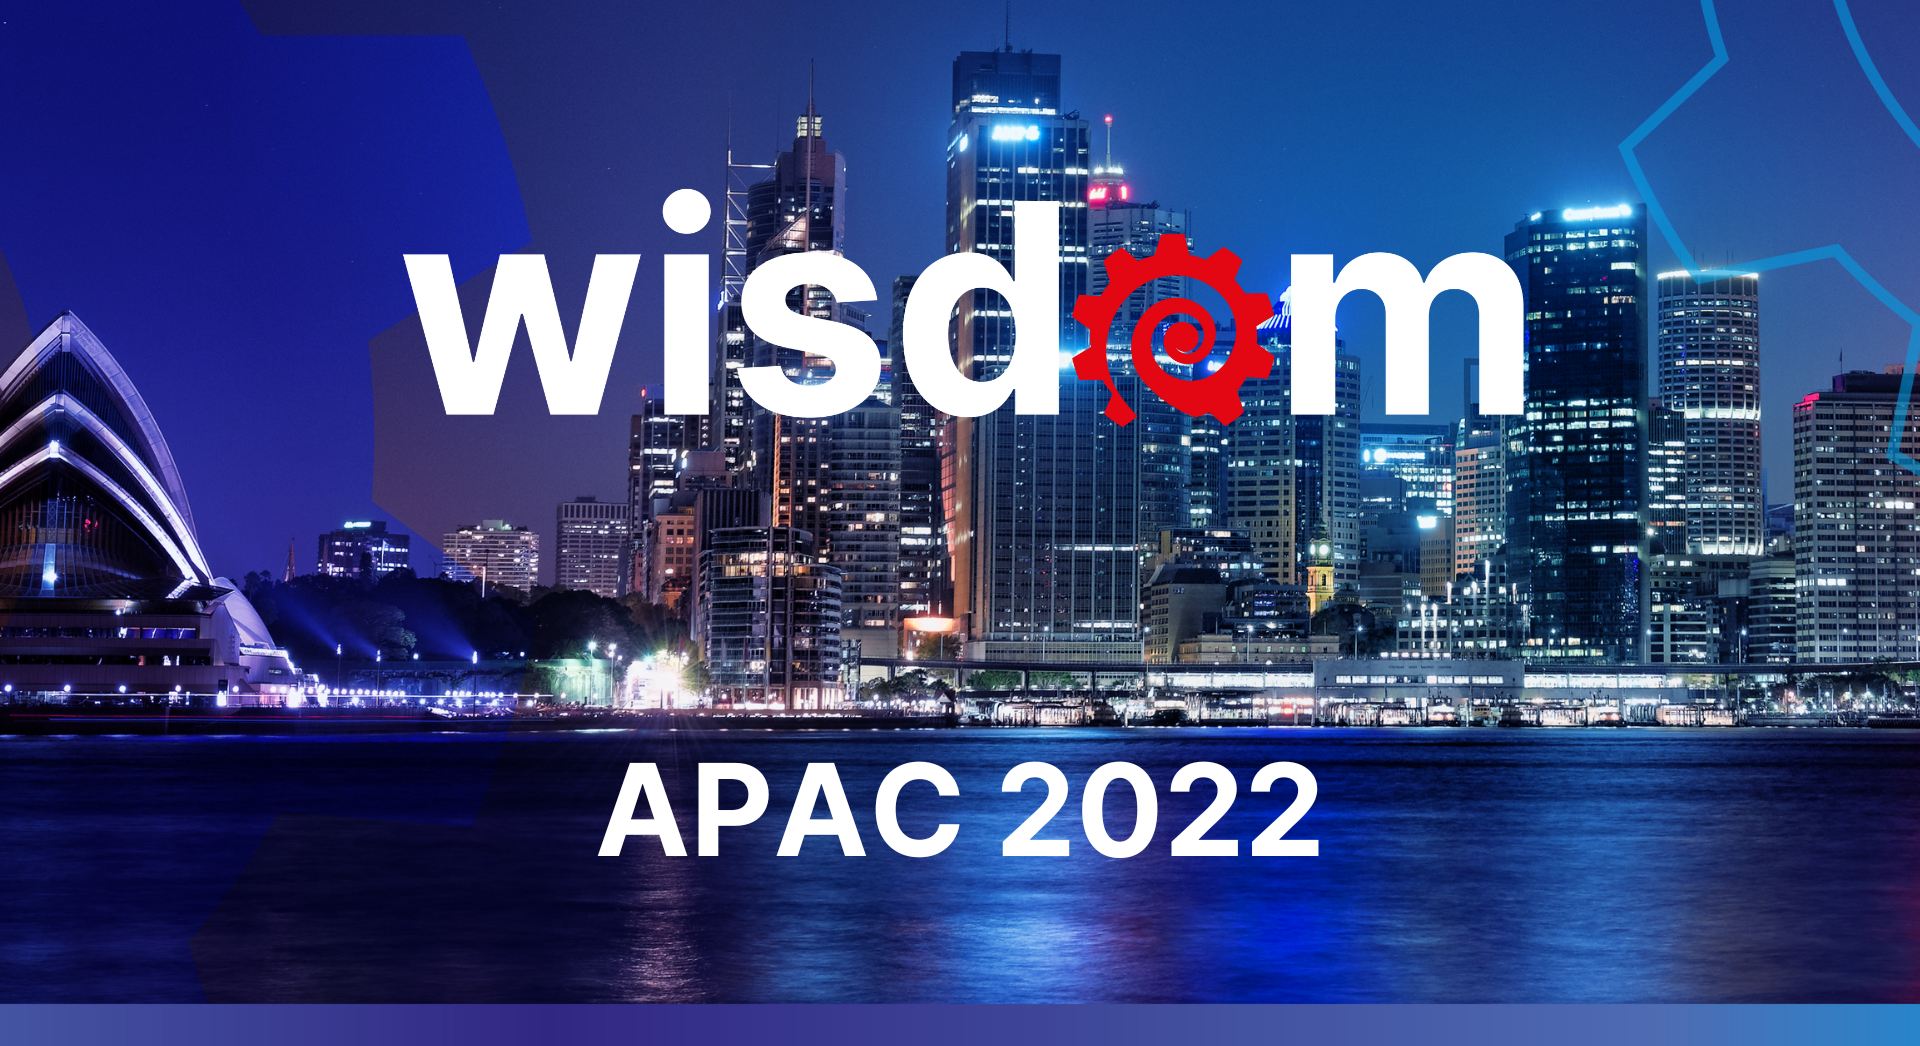 Wisdom APAC 2022